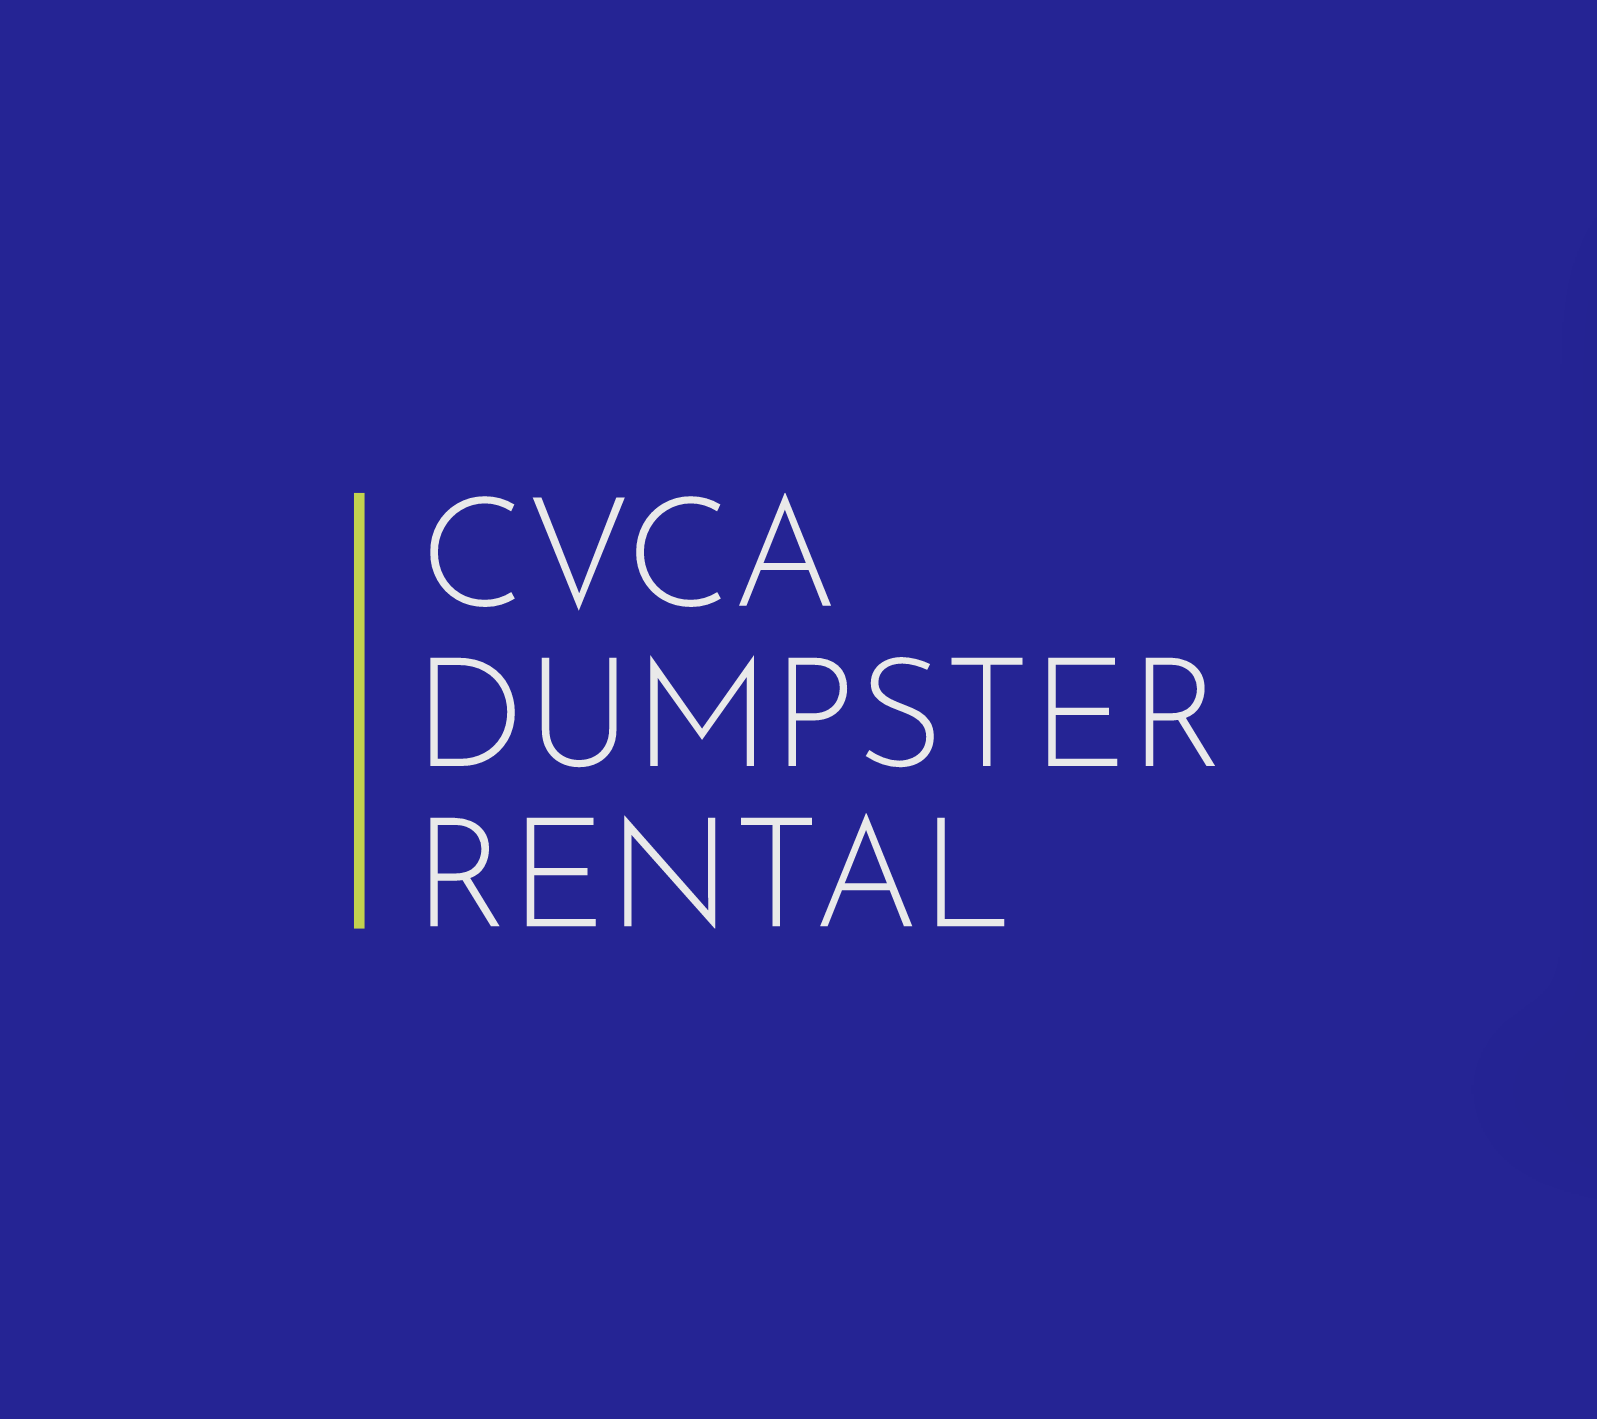 CVCA Dumpster Rental